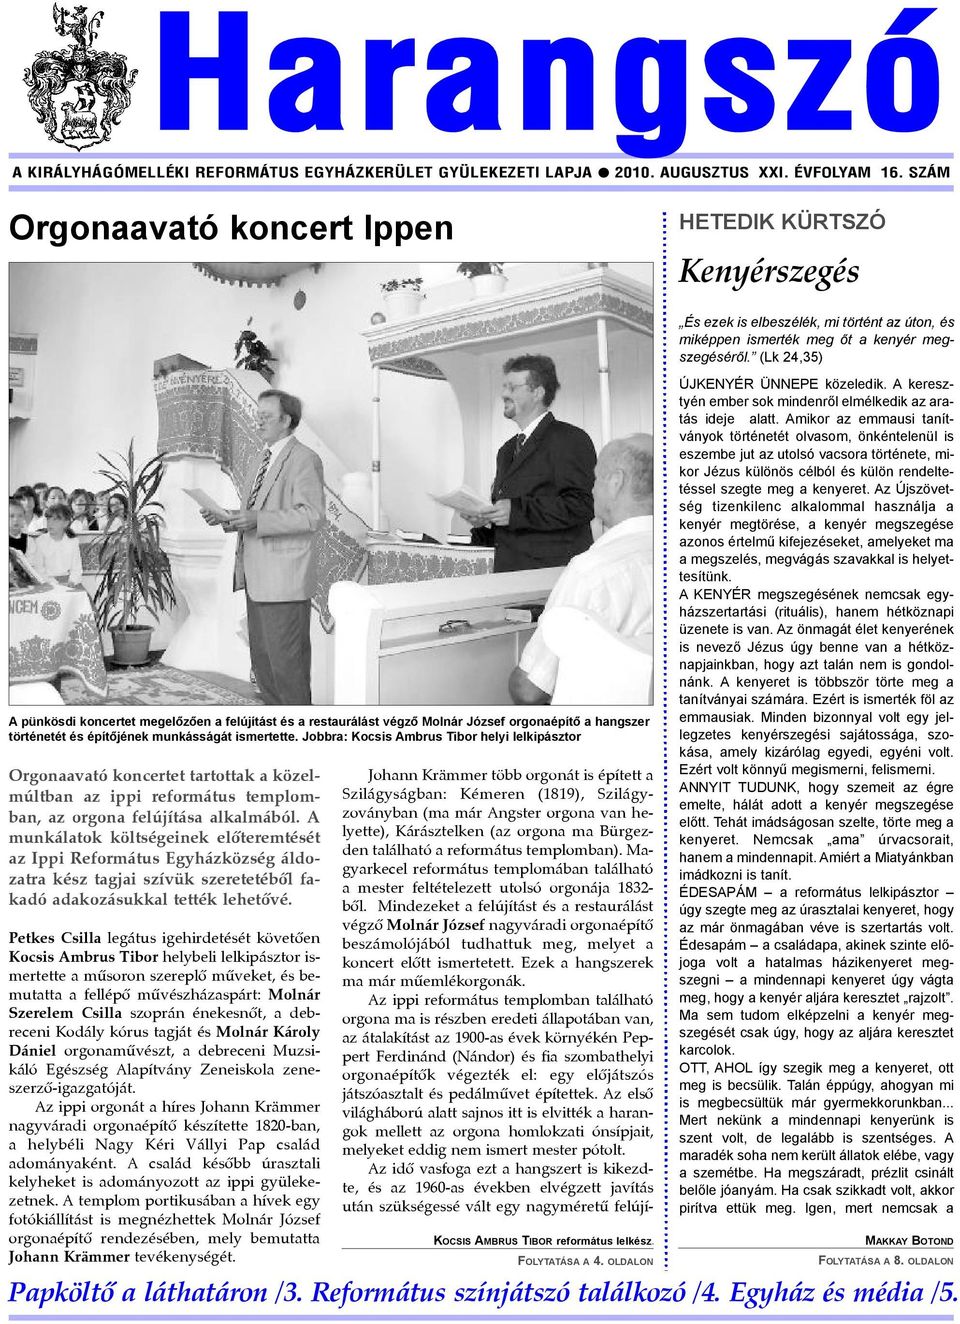 munkásságát ismertette. Jobbra: Kocsis Ambrus Tibor helyi lelkipásztor Orgonaavató koncertet tartottak a közelmúltban az ippi református templomban, az orgona felújítása alkalmából.